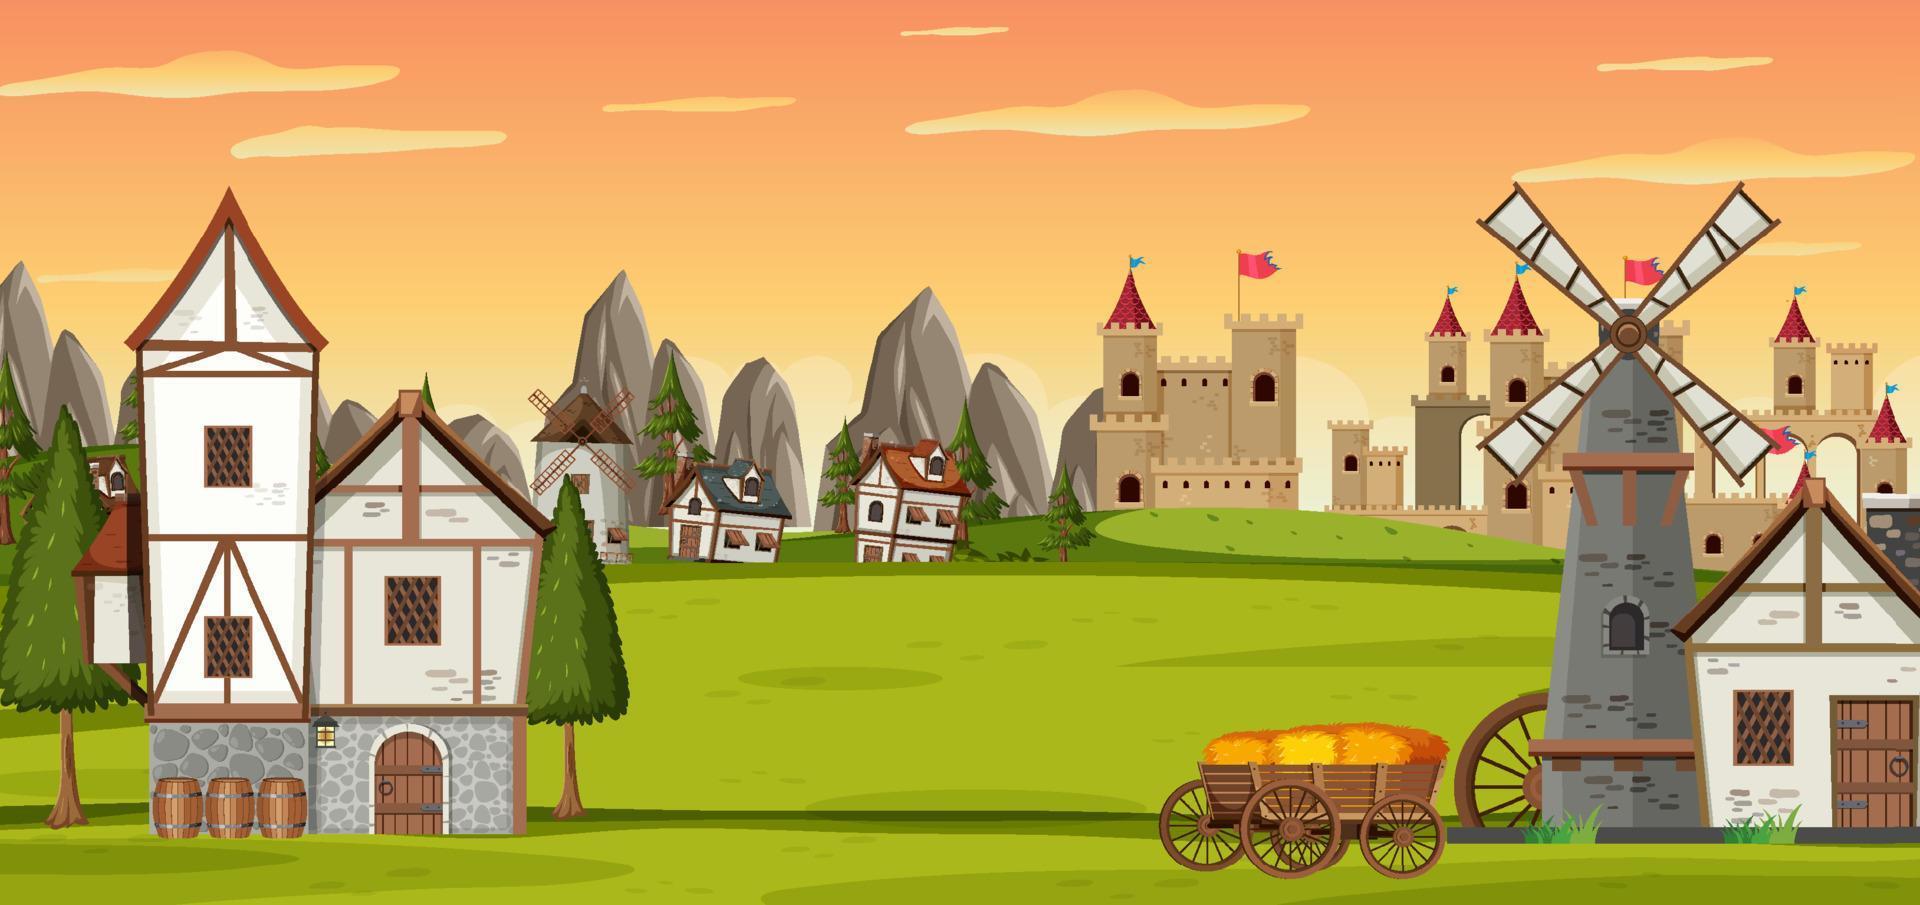 cena de paisagem com cidade medieval vetor